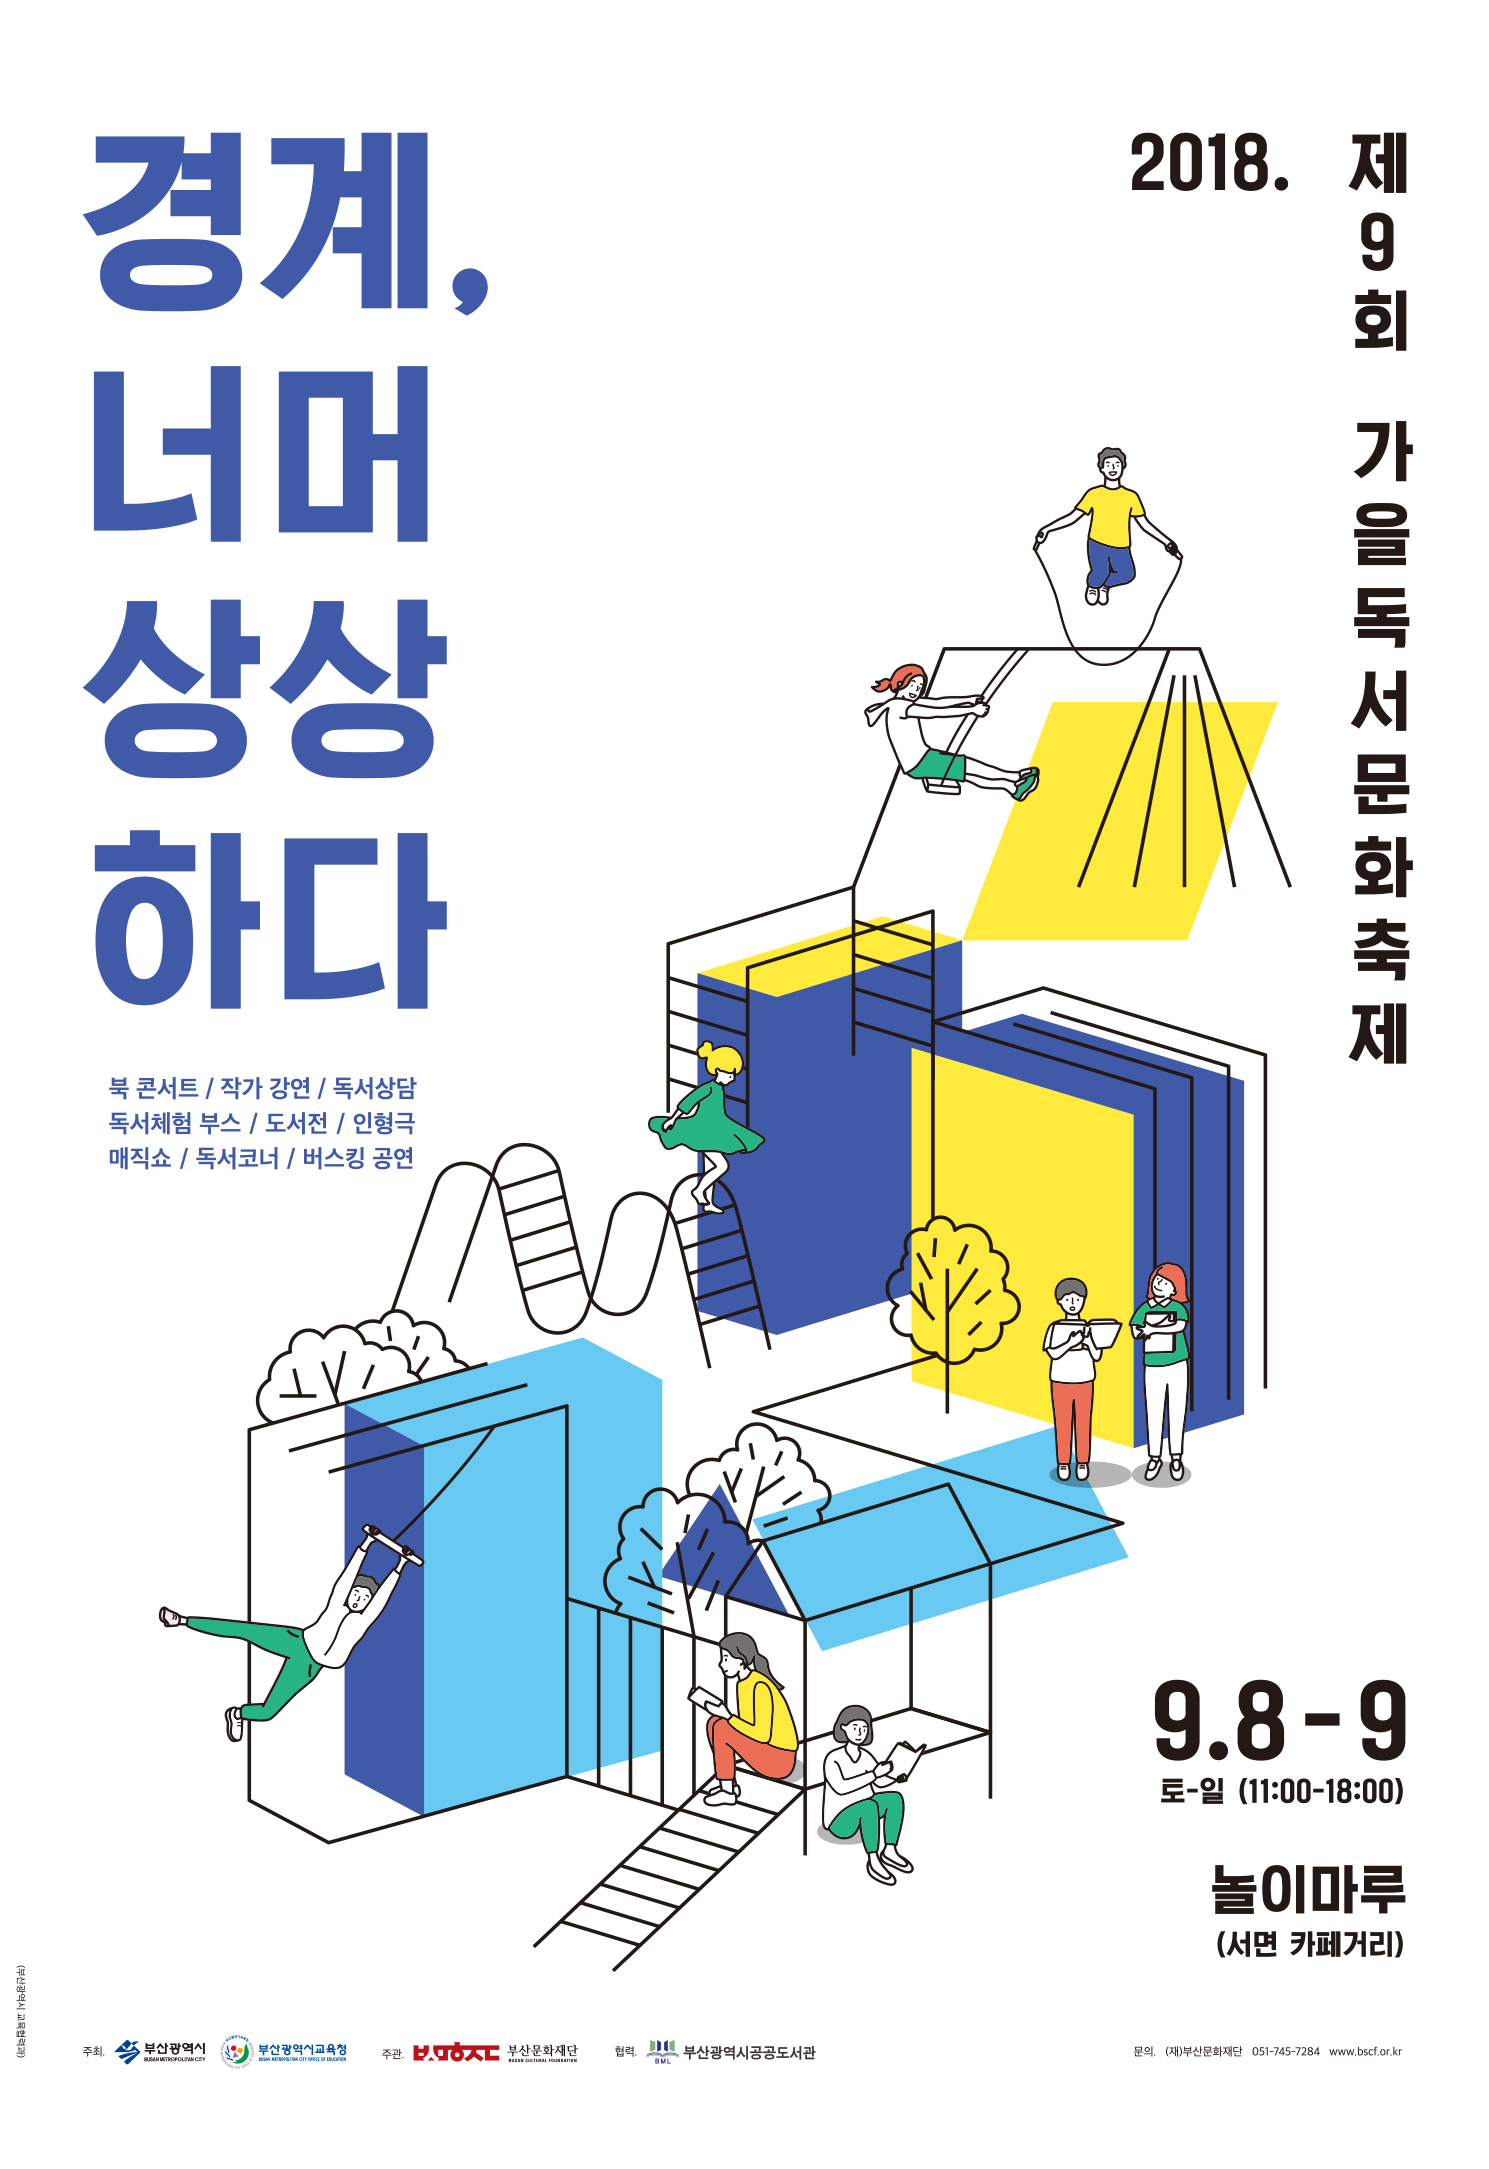 2018년 가을독서문화축제(9.8~9.9) 개최 안내